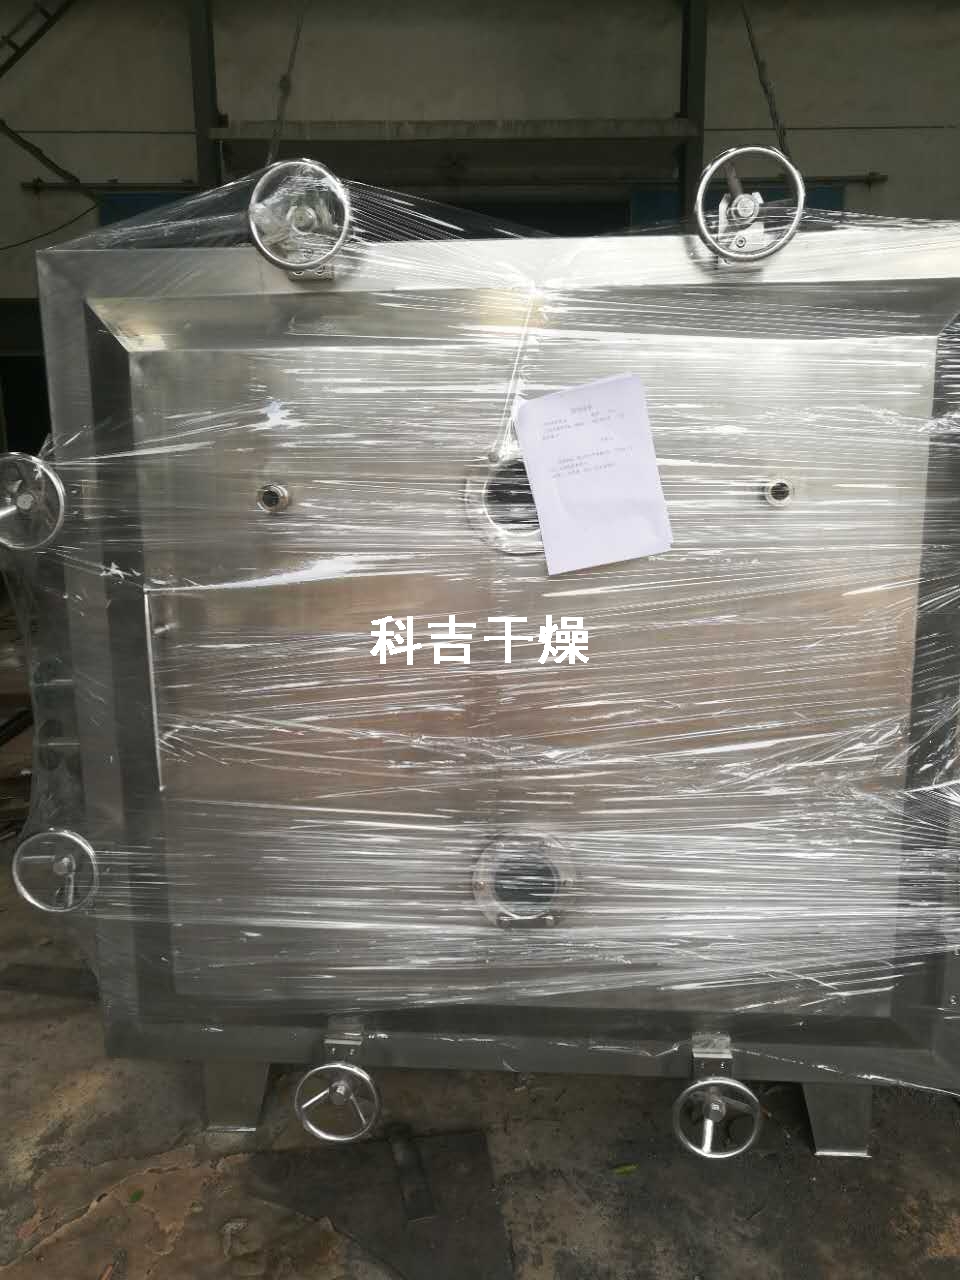 广西某制药公司订购的方形真空干燥机，发货